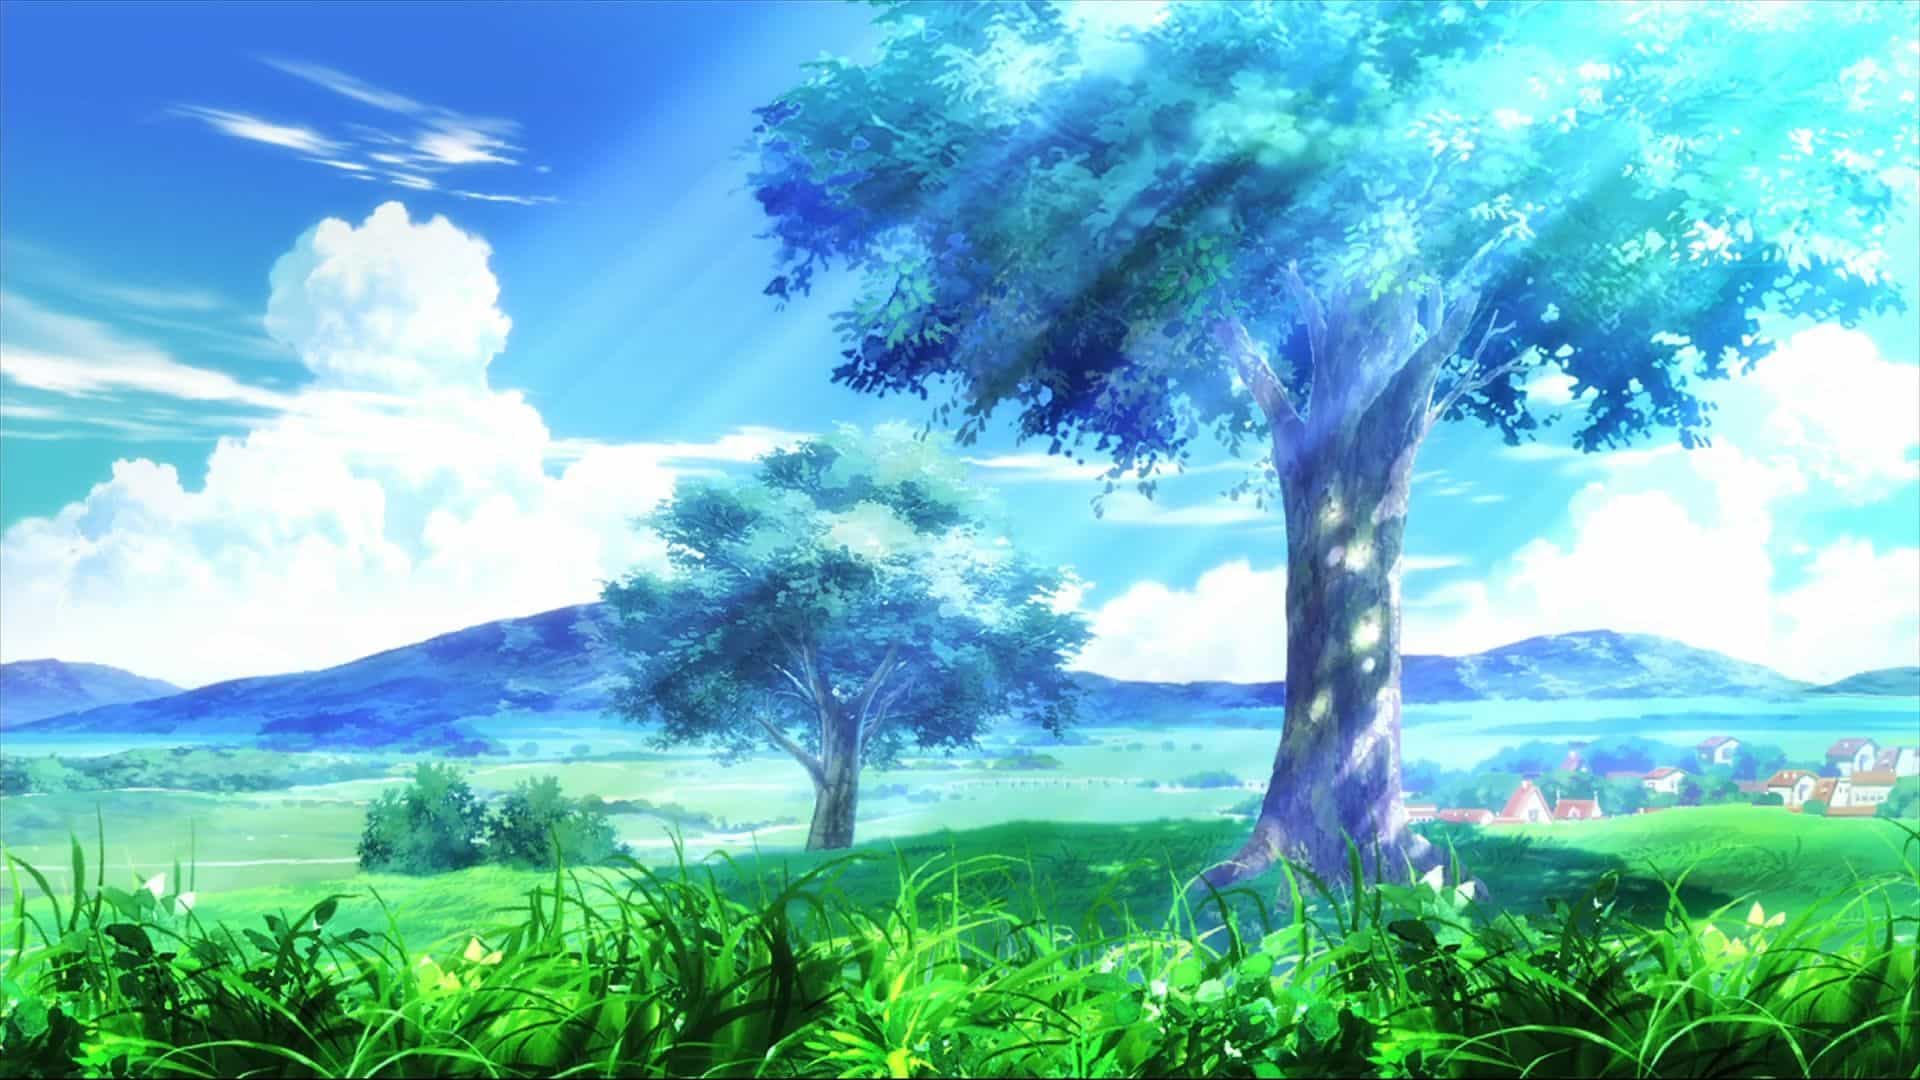 Hình Anime Bình Yên giữa cánh đồng xanh ngắt